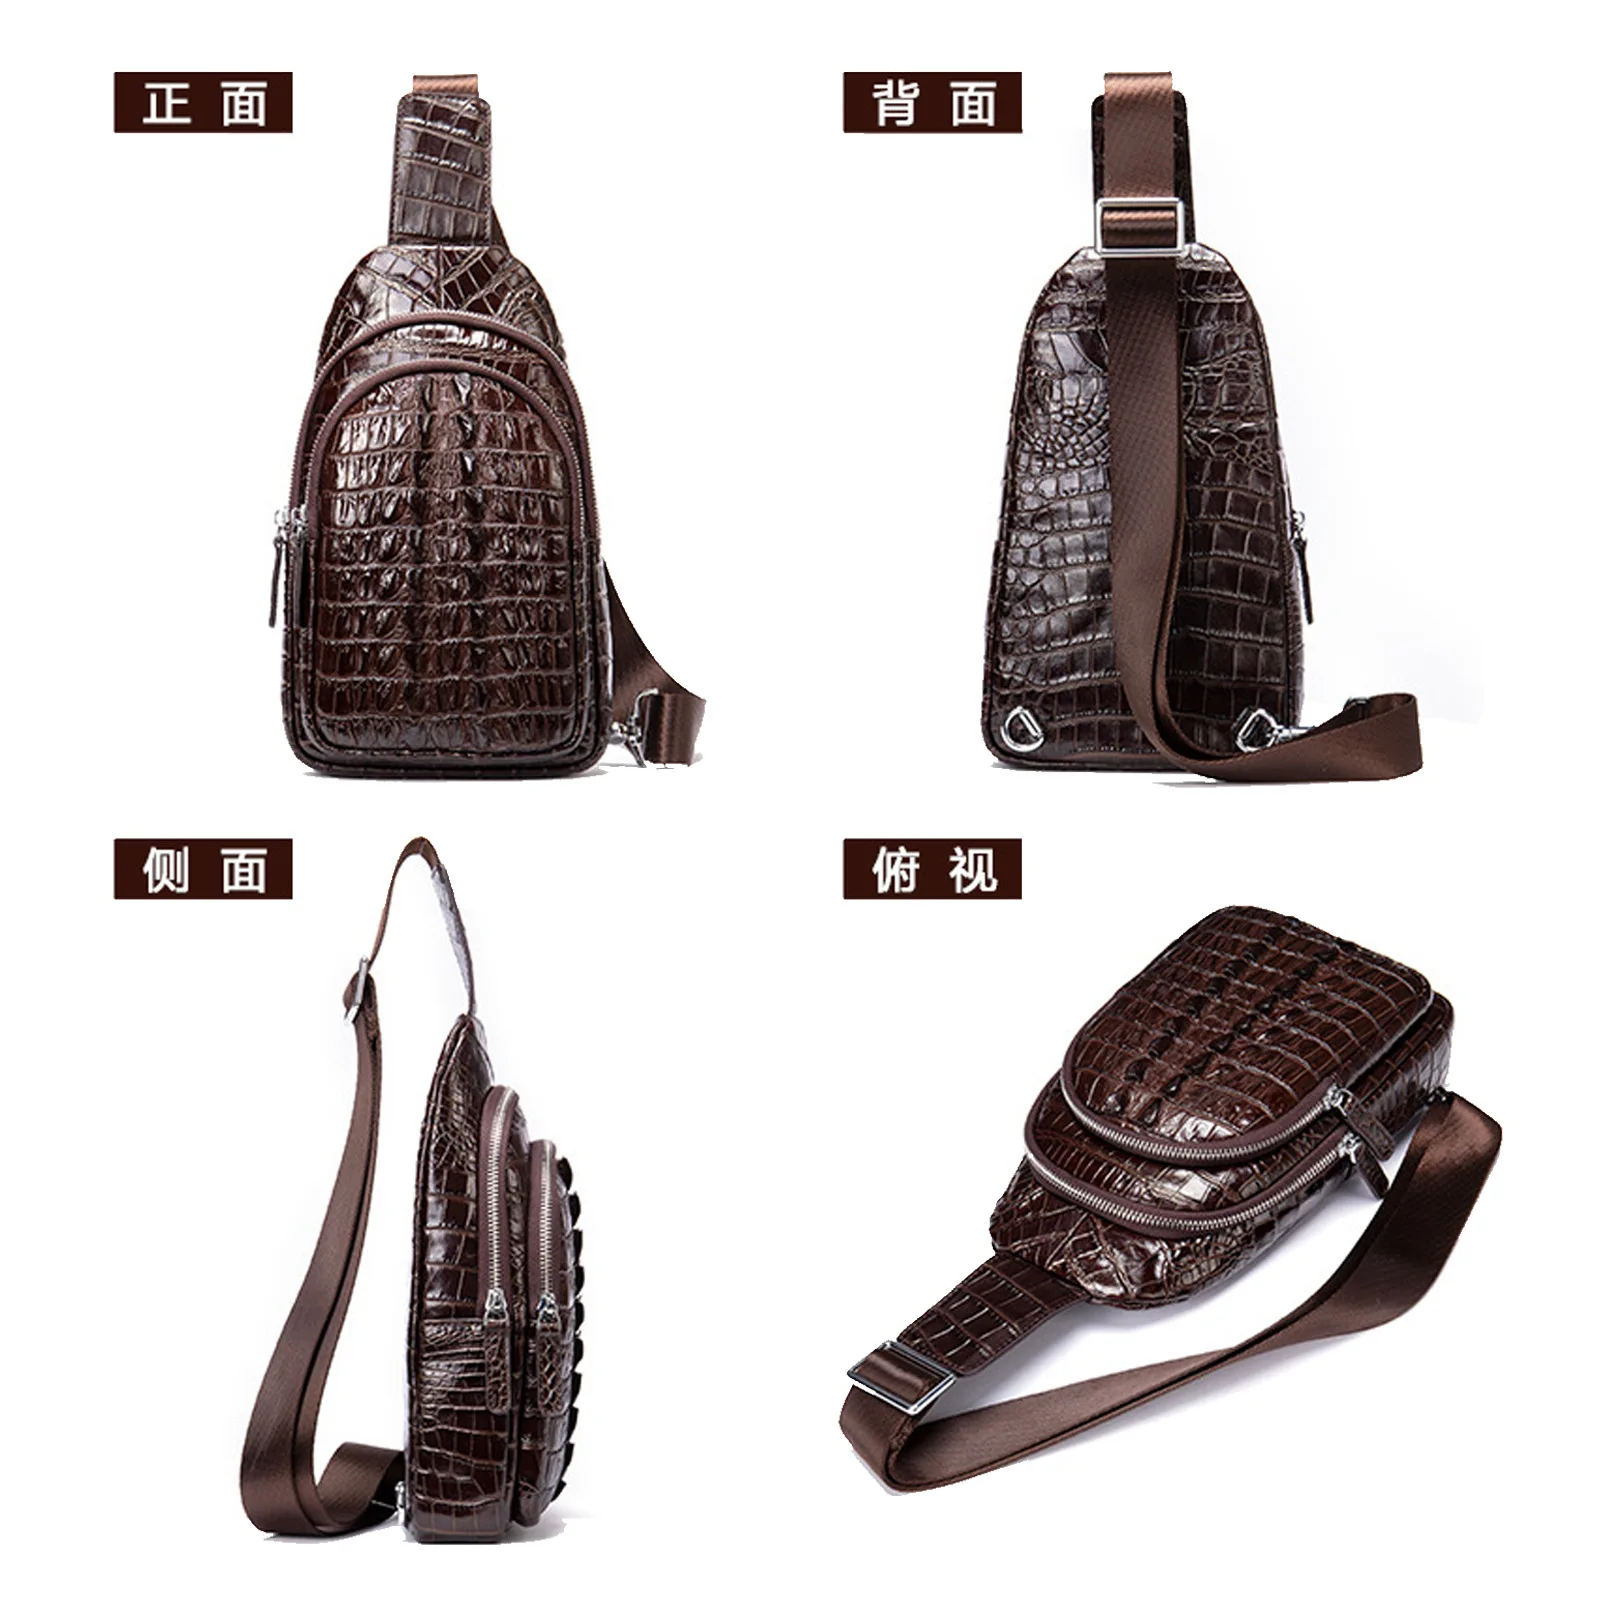 Мужская кожаная нагрудная сумка Легкий Роскошный дизайн с рисунком крокодиловой кожи Хвостовой плавник Многофункциональная сумка через плечо - 1